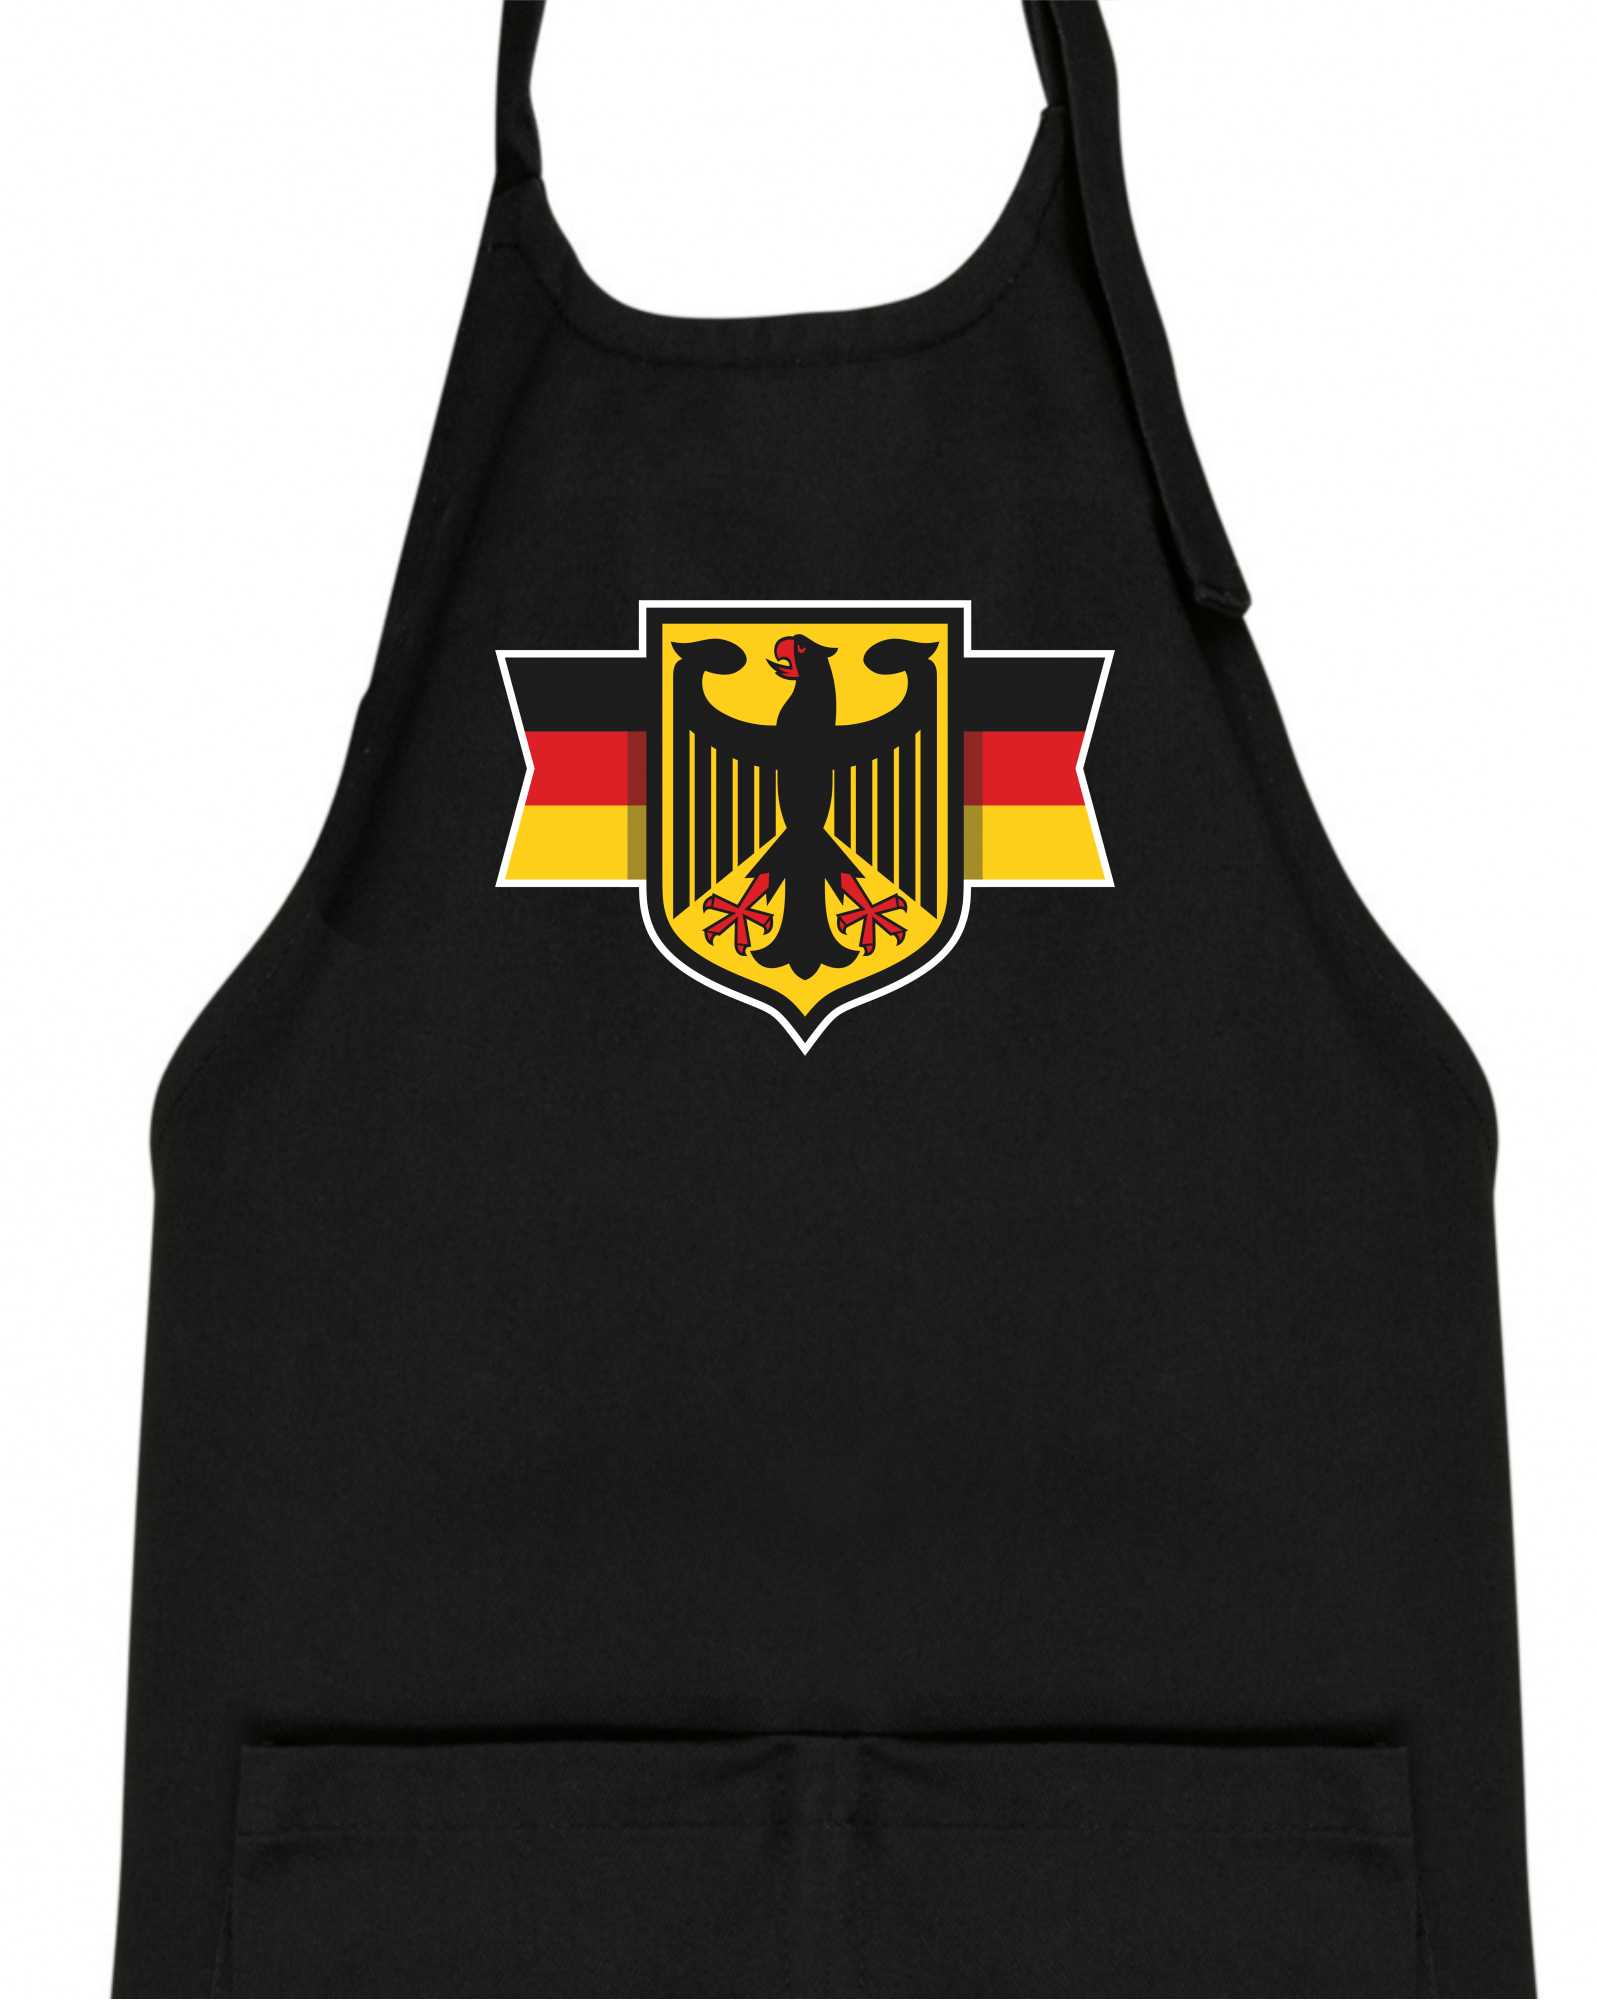 Německá orlice a vlajka - Dětská zástěra na vaření